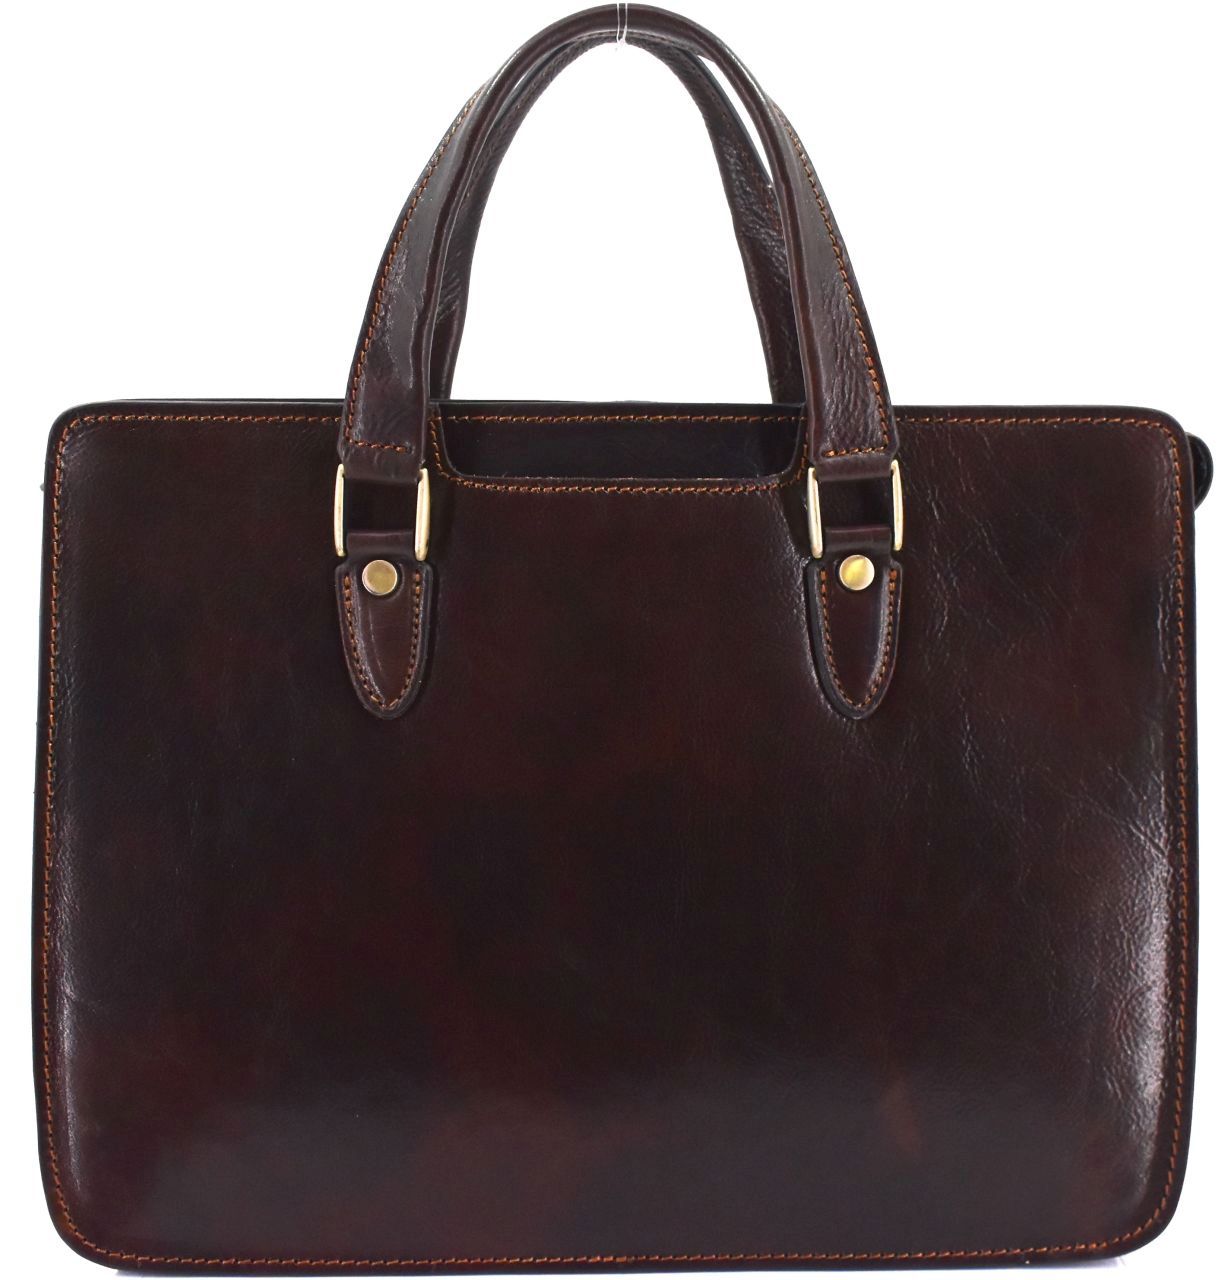 Luxusní dámská kožená kabelka Arteddy - tmavě hnědá 36963